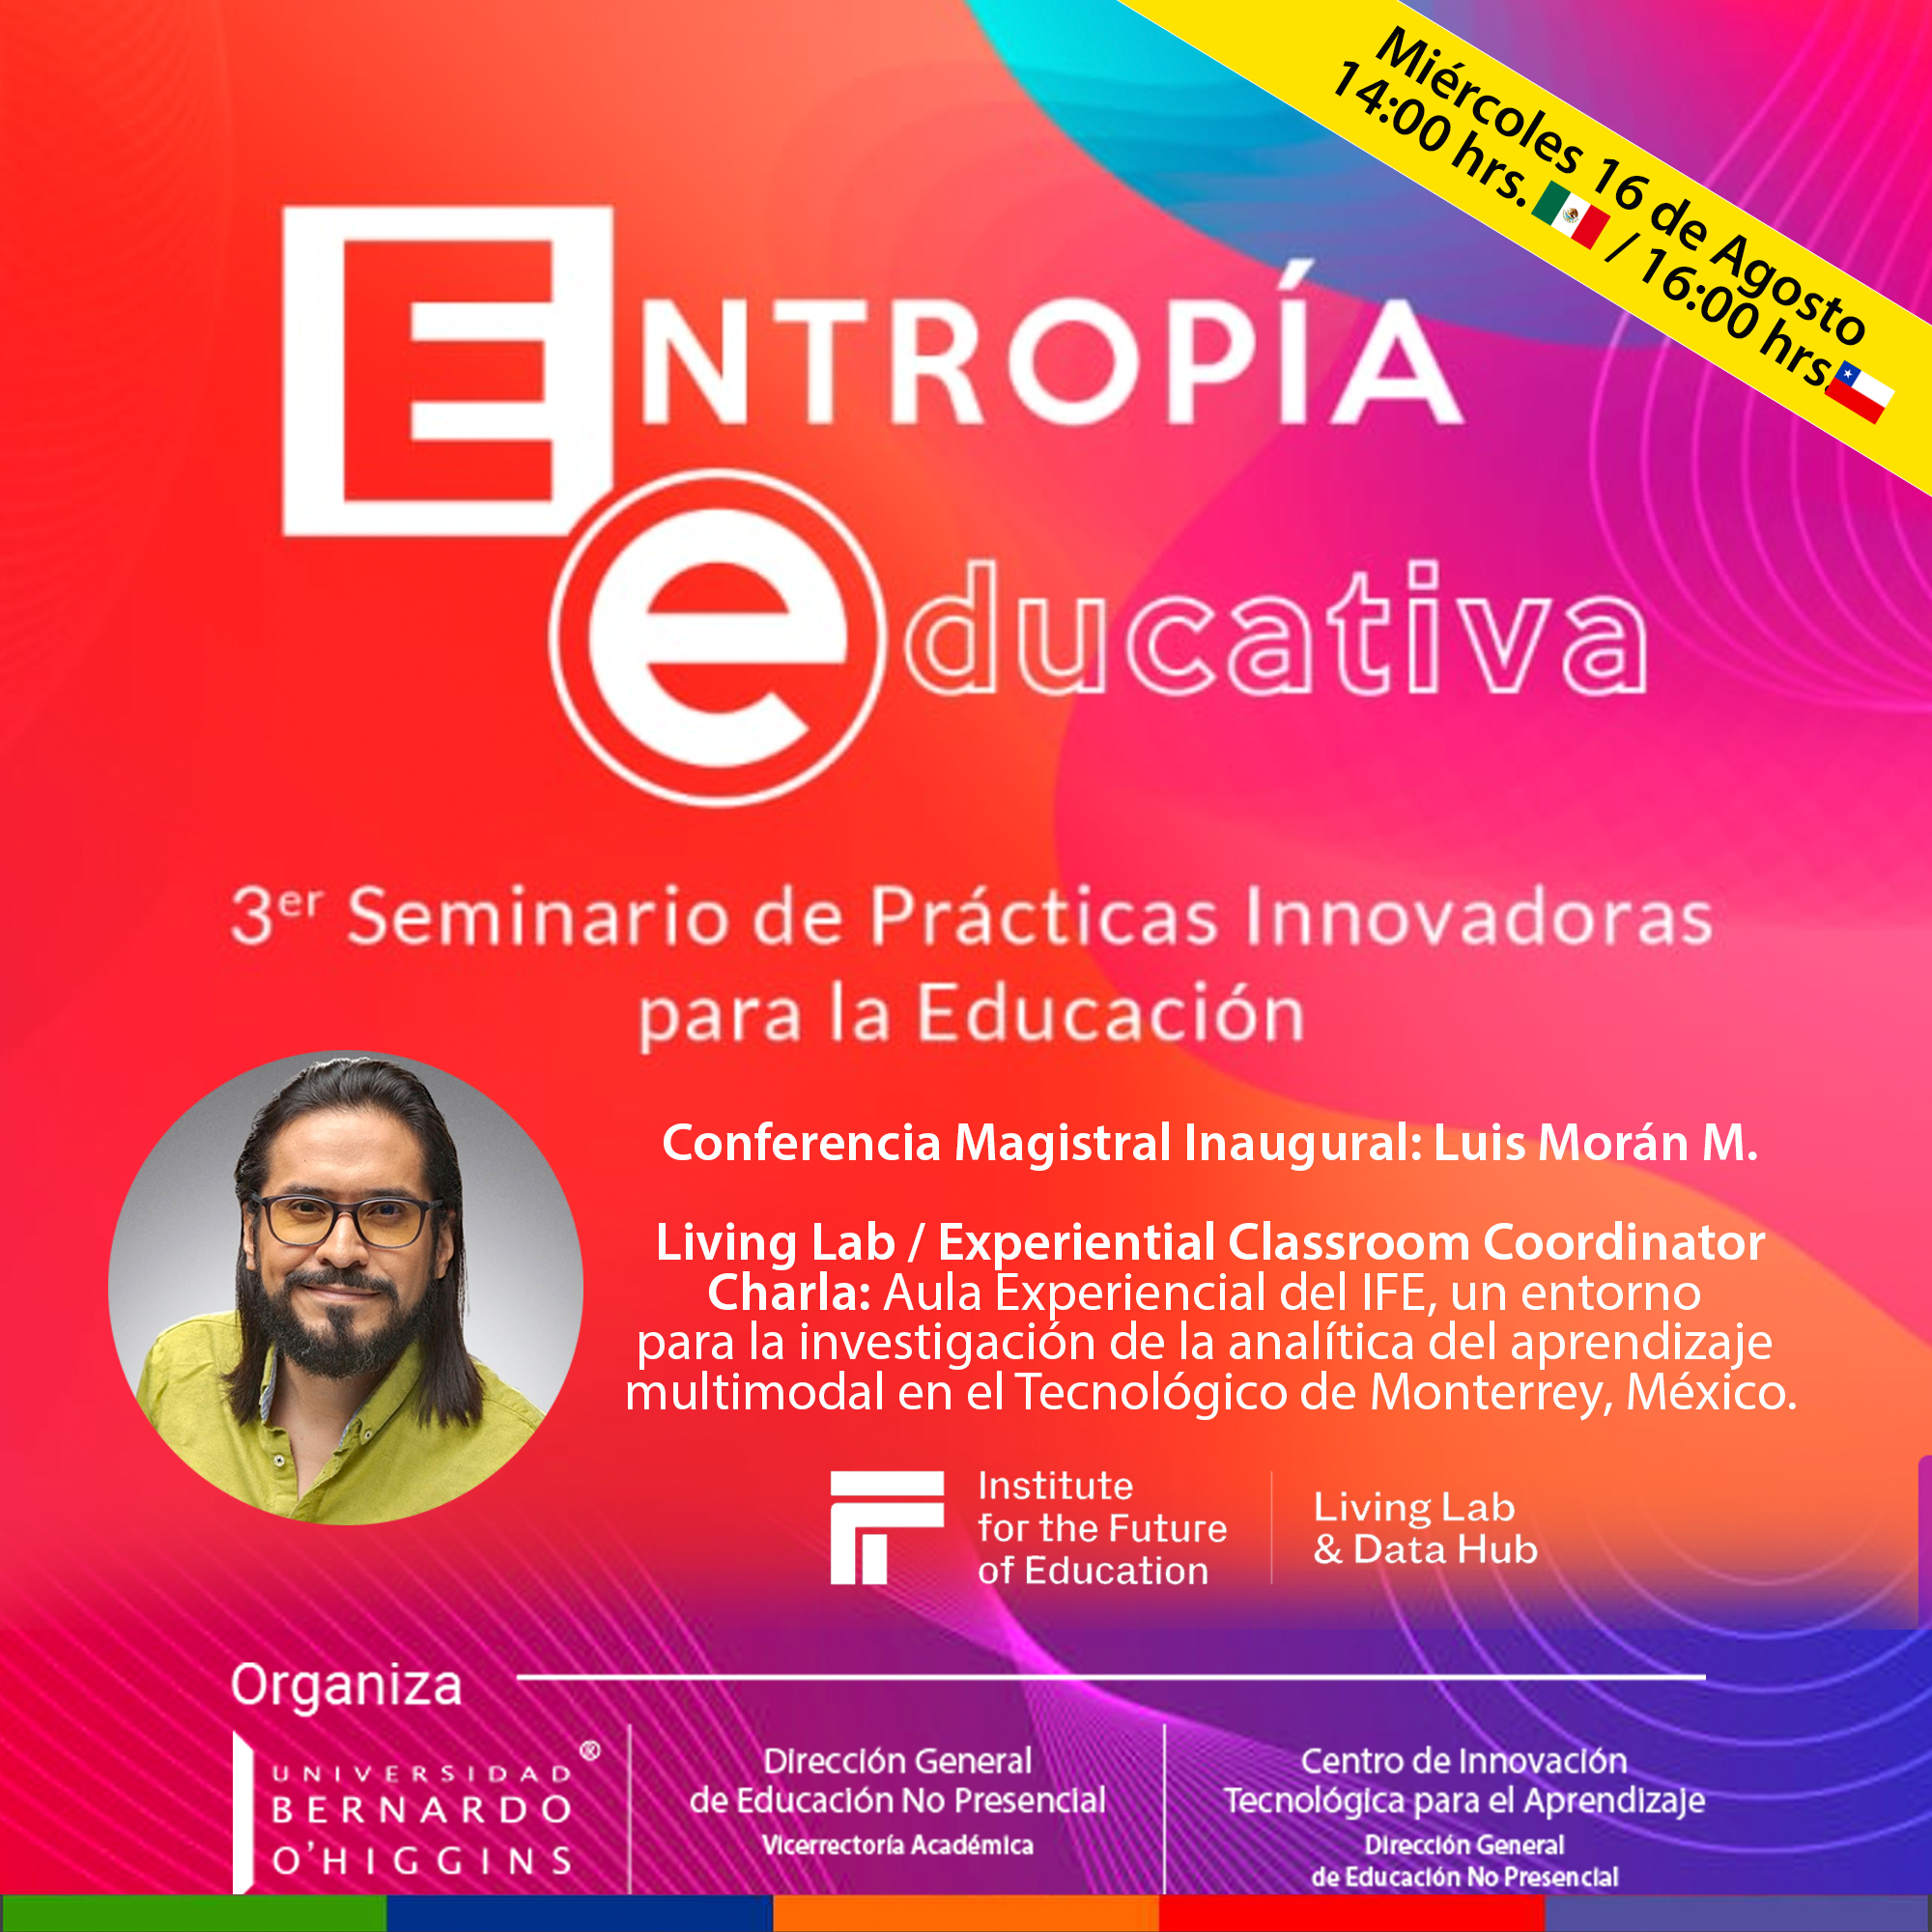 3¢" Seminario de Practicas Innovadoras
para la Educacion

Conferencia Magistral Inaugural: Luis Moran M.

Living Lab / Experiential Classroom Coordinator
Charla: Aula Experiencial del IFE, un entorno
para la investigacion de la analitica del aprendizaje
multimodal en el Tecnoldgico de Monterrey, México.

 

ESC

I Living Lab
for the Future
| of Education & Data Hub

Ole F-1a] V4:
TR ER BRA Direccién General Centro de Innovacién
BERNARDO de Educacién No Presenclal Tecnolégica para el Aprendizaje
’ NUE CIR GIFT Te] Direccién General
OHIGGINS de Educacién No Presenclal